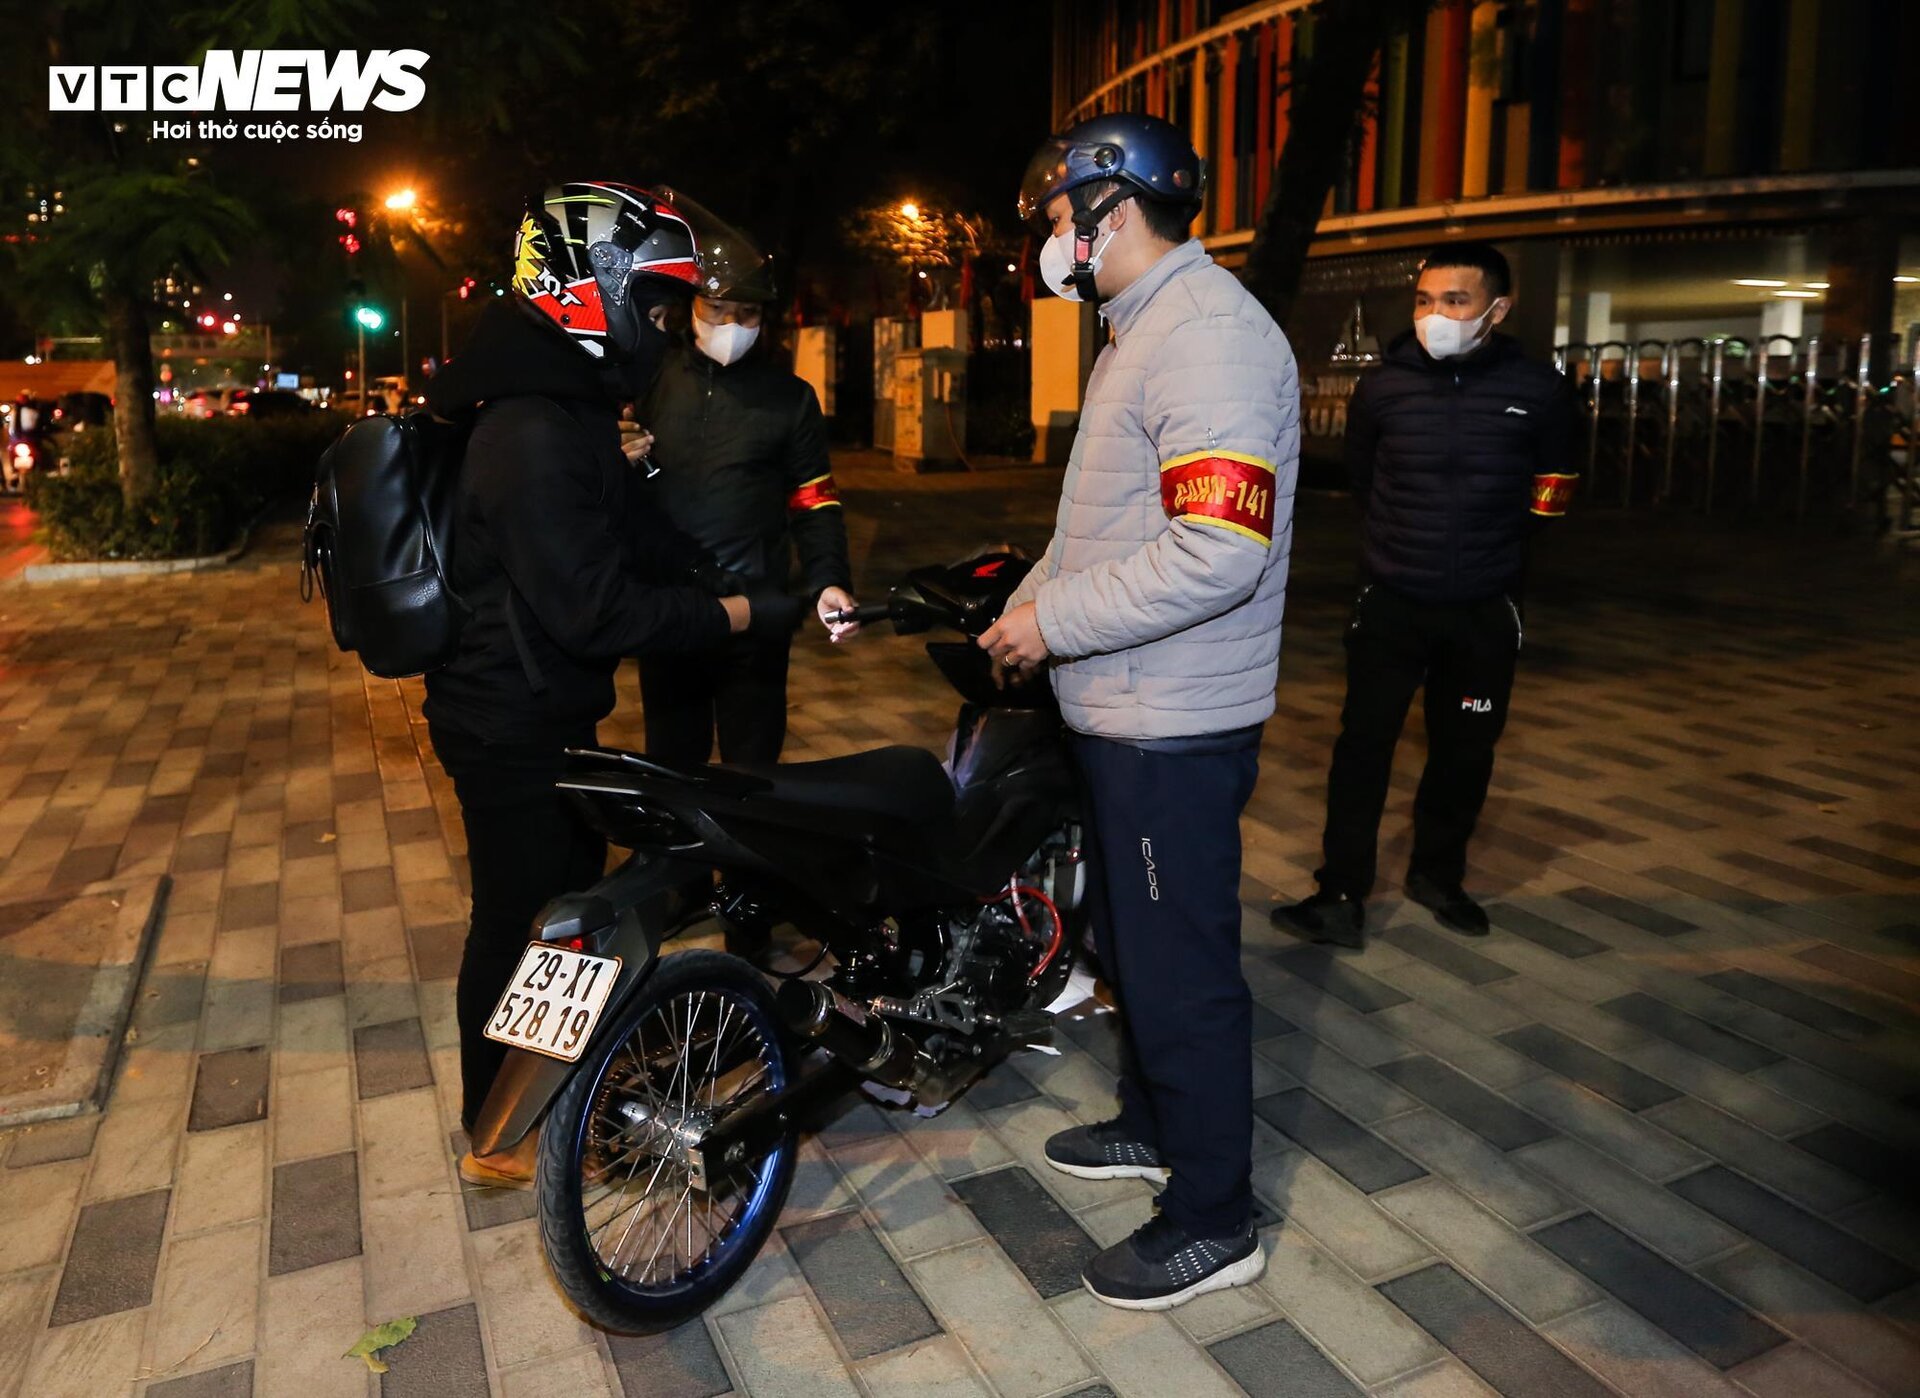 Cảnh sát 141 hóa trang đón lõng các 'quái xế' độ xe, nẹt pô trên phố Hà Nội - Ảnh 7.